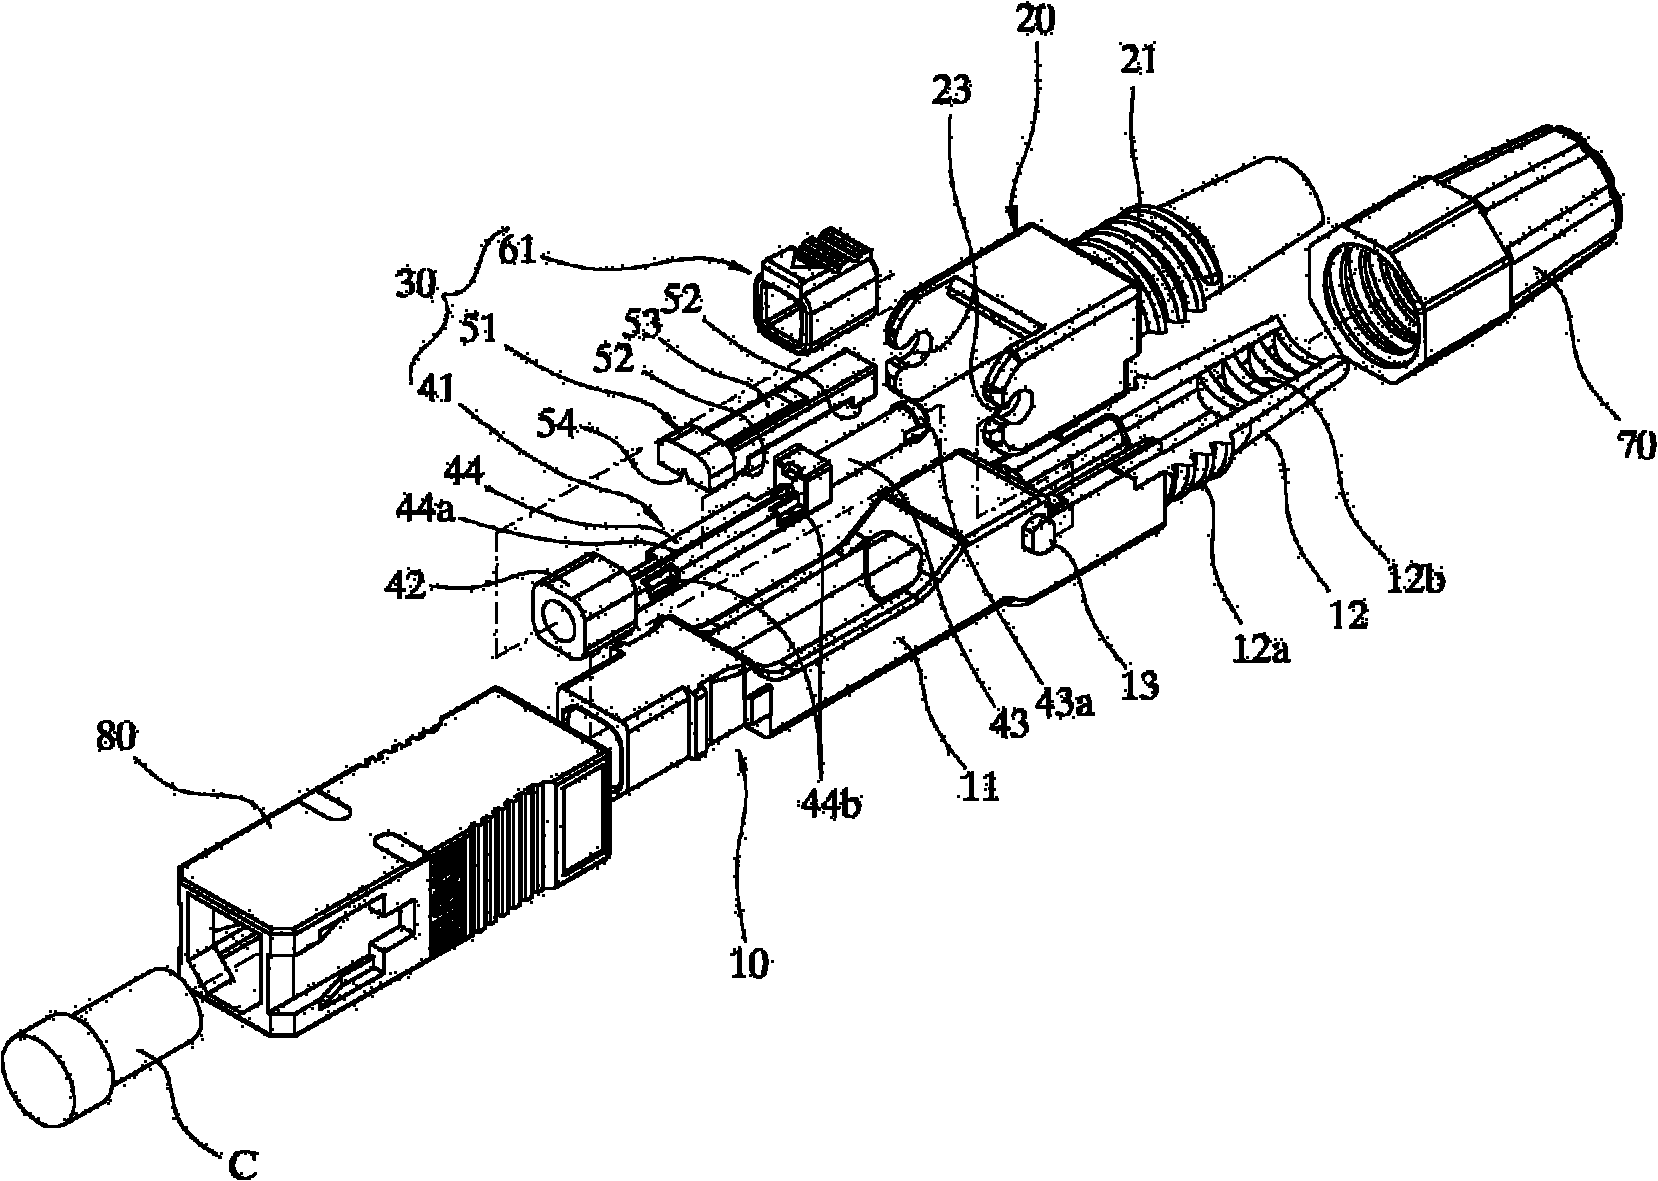 Field assembling optical connector